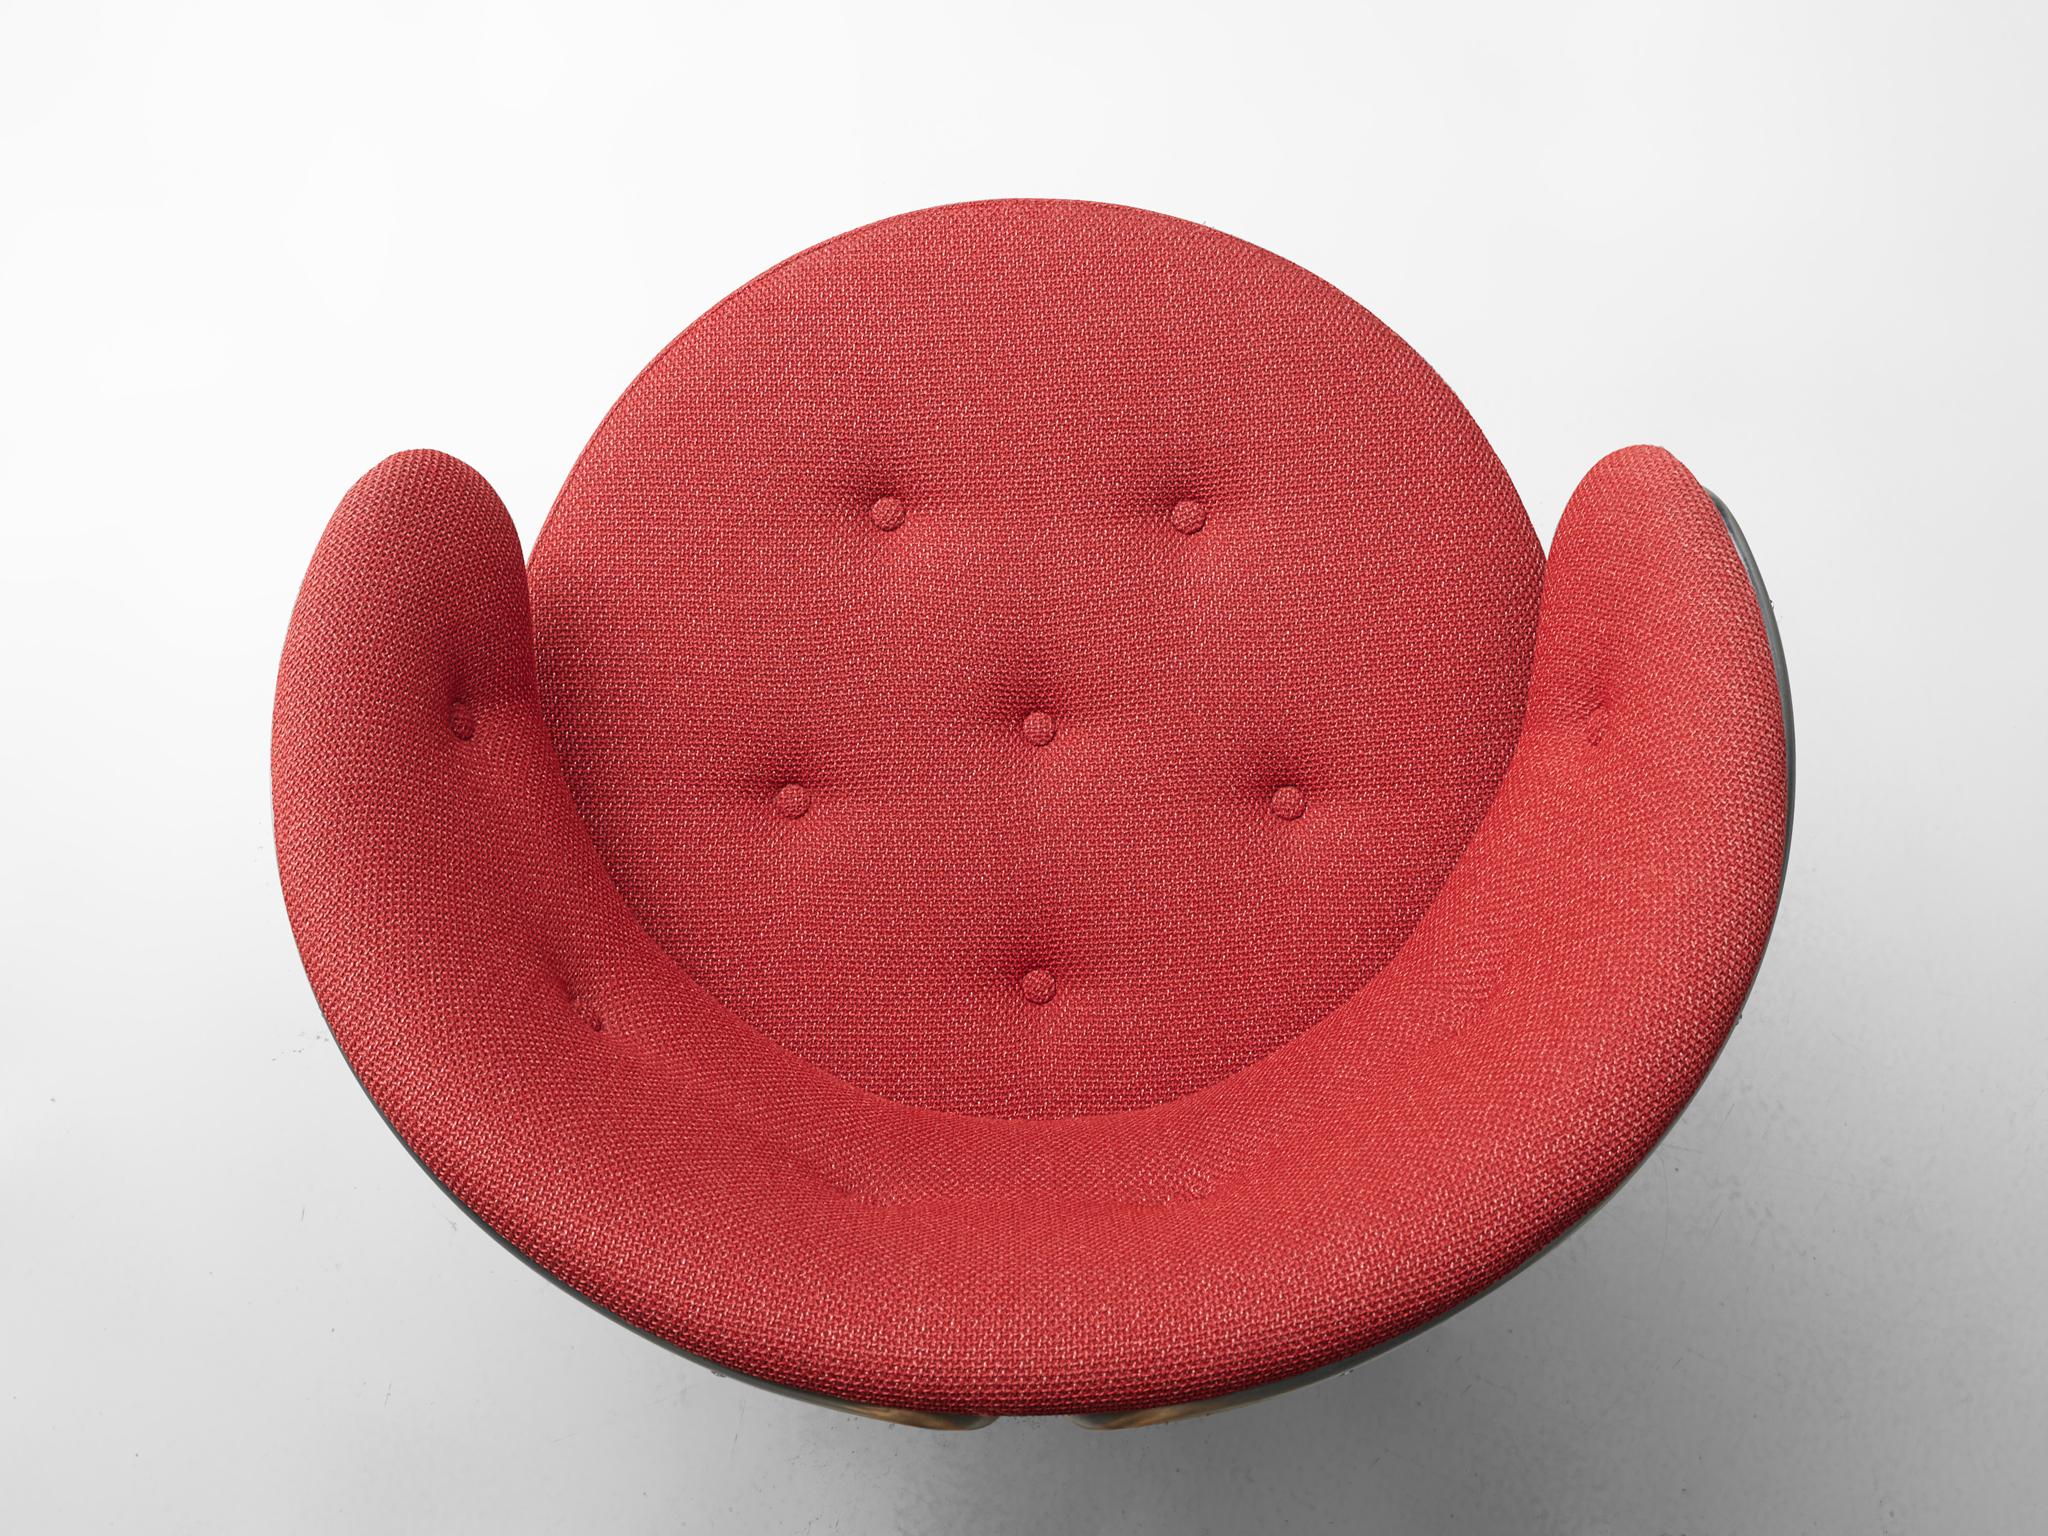 Scandinavian Modern Grete Jalk for Fritz Hansen Easy Chair in Tubular Steel and Red Upholstery 